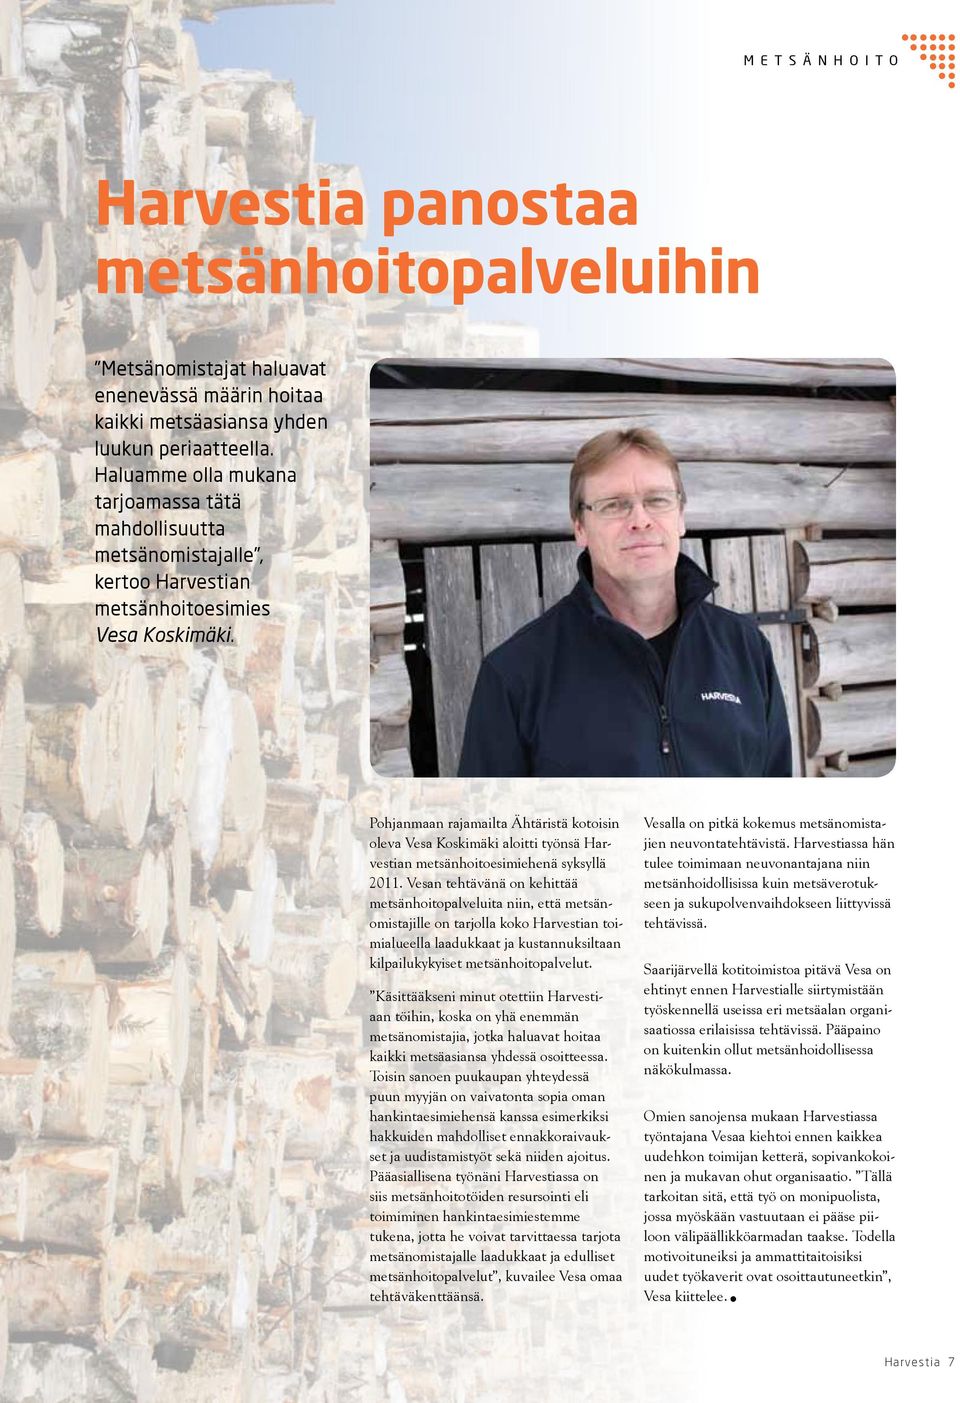 Pohjanmaan rajamailta Ähtäristä kotoisin oleva Vesa Koskimäki aloitti työnsä Harvestian metsänhoitoesimiehenä syksyllä 2011.